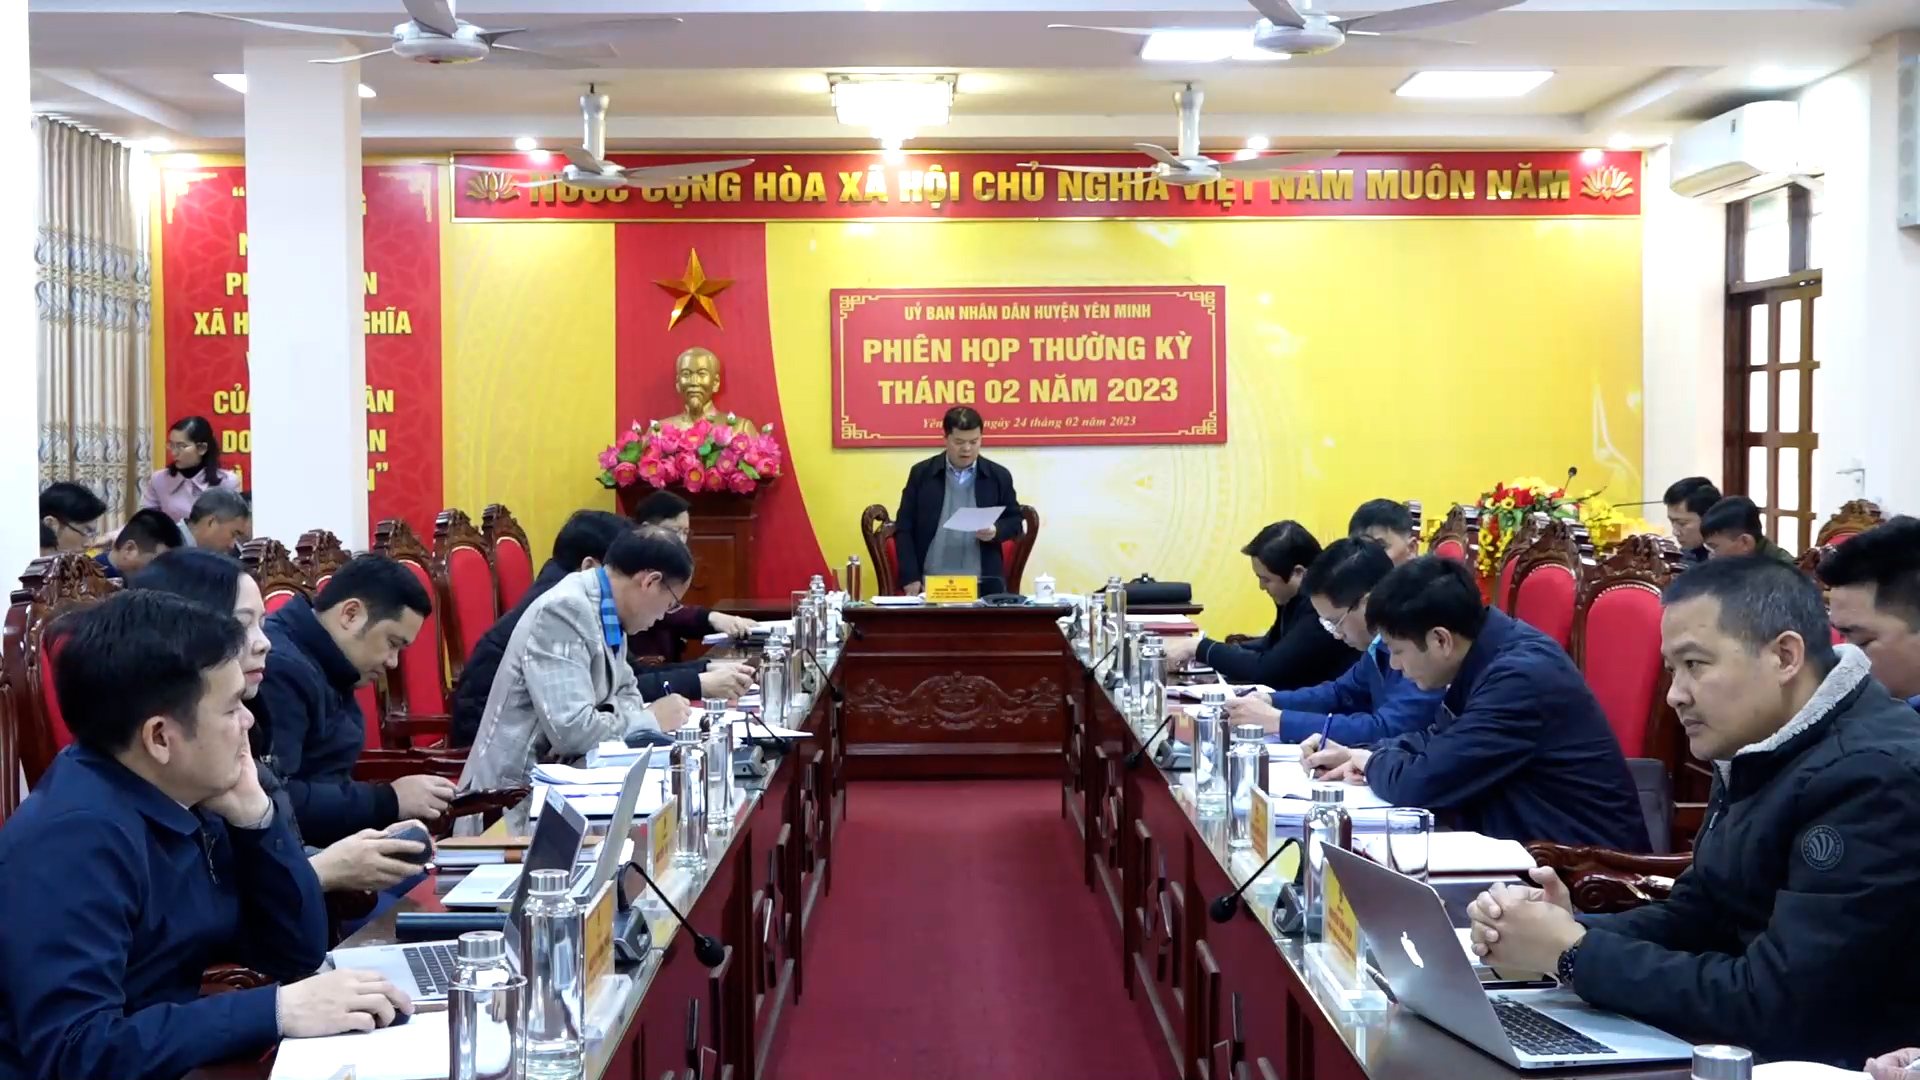 UBND huyện Yên Minh tổ chức phiên họp thường kỳ tháng 2 năm 2023